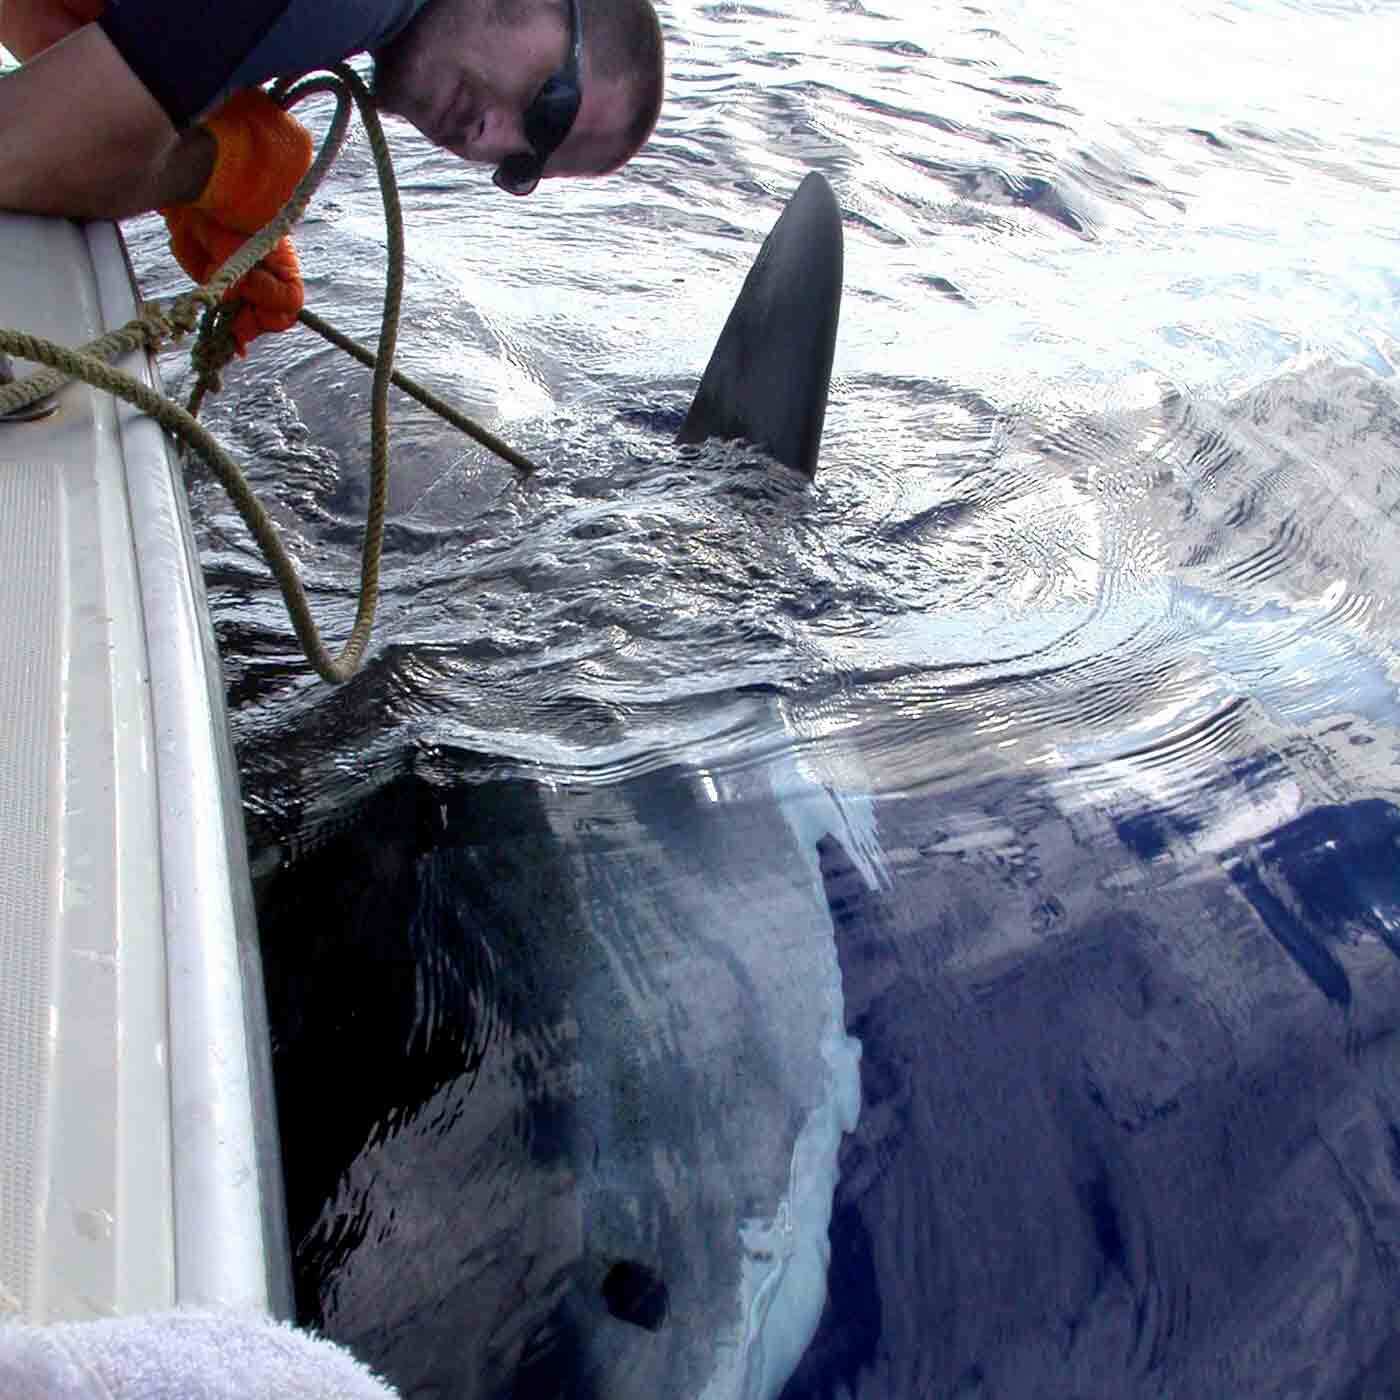 43 - Do Shark Deterrents Actually Work?